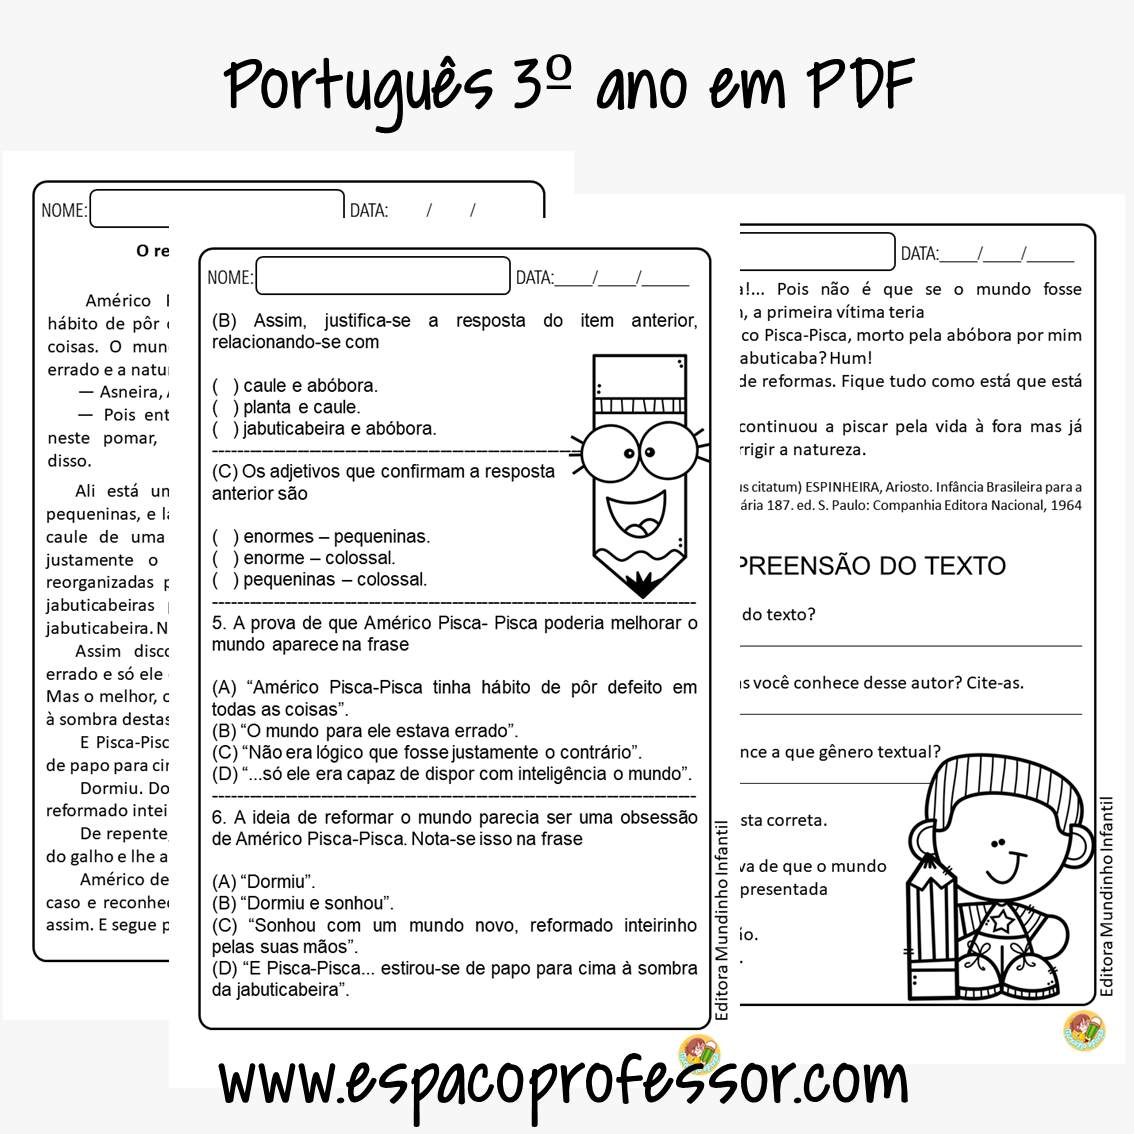 Atividades de Português para o 3º ano (Ensino Fundamental) - Toda Matéria